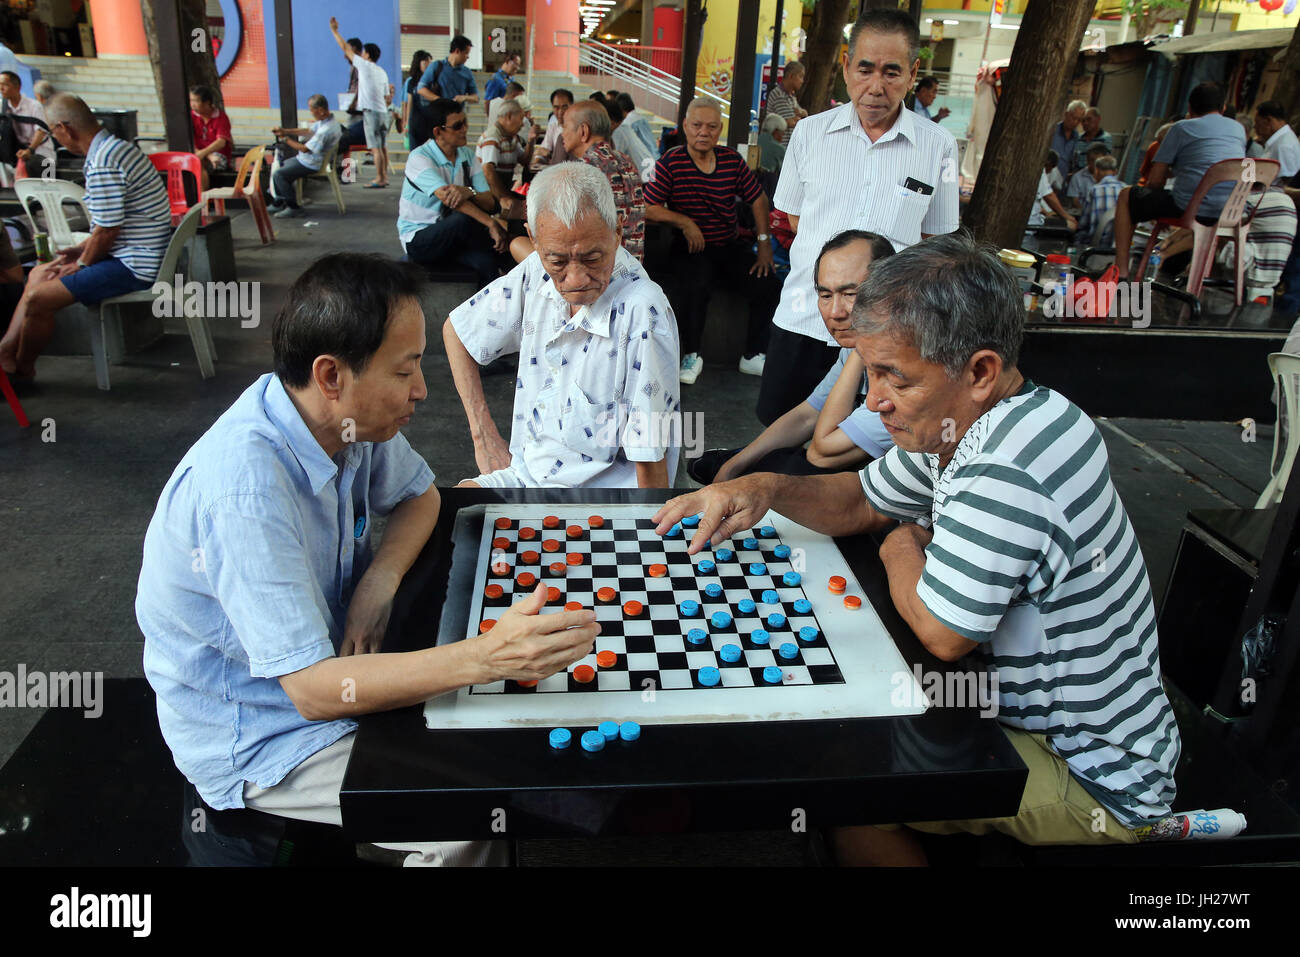 Des groupes de personnes se réunissent pour jouer de traites ou d'autres jeux dans les rues de Chinatown. Singapour. Banque D'Images